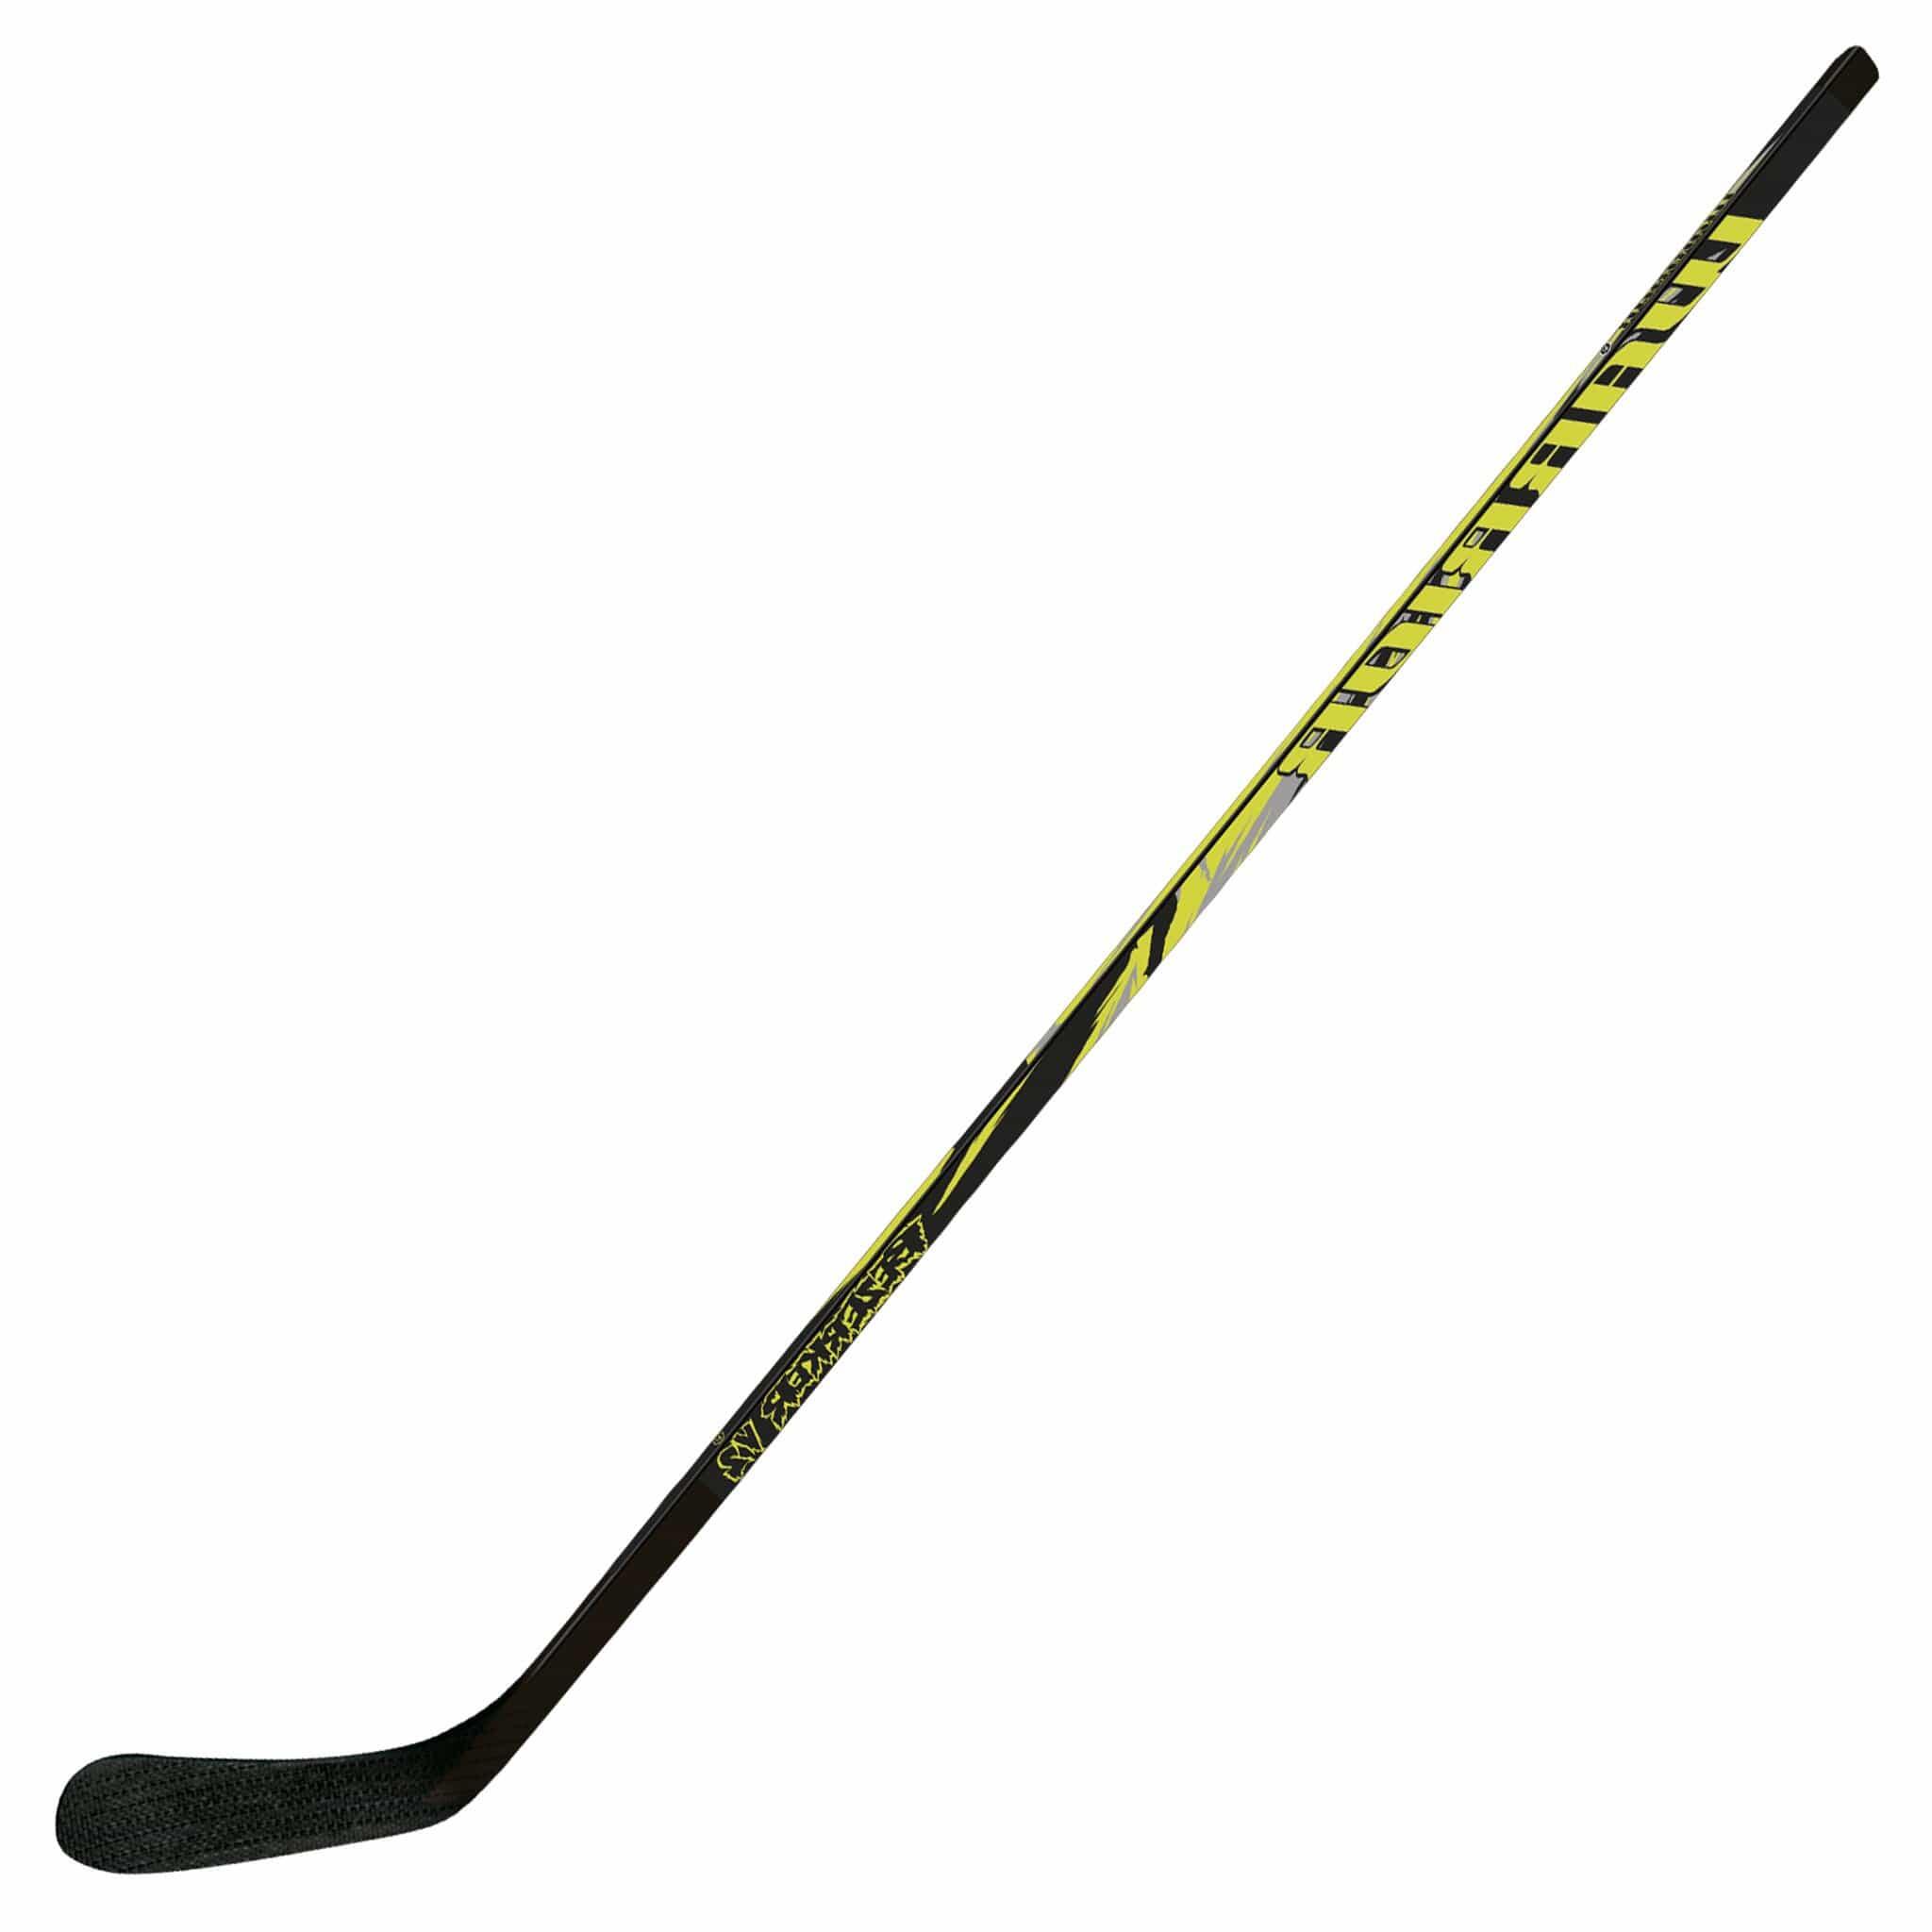 Warrior Bezerker V2 Wooden Hockey Stick - Junior Left Hand 1/1